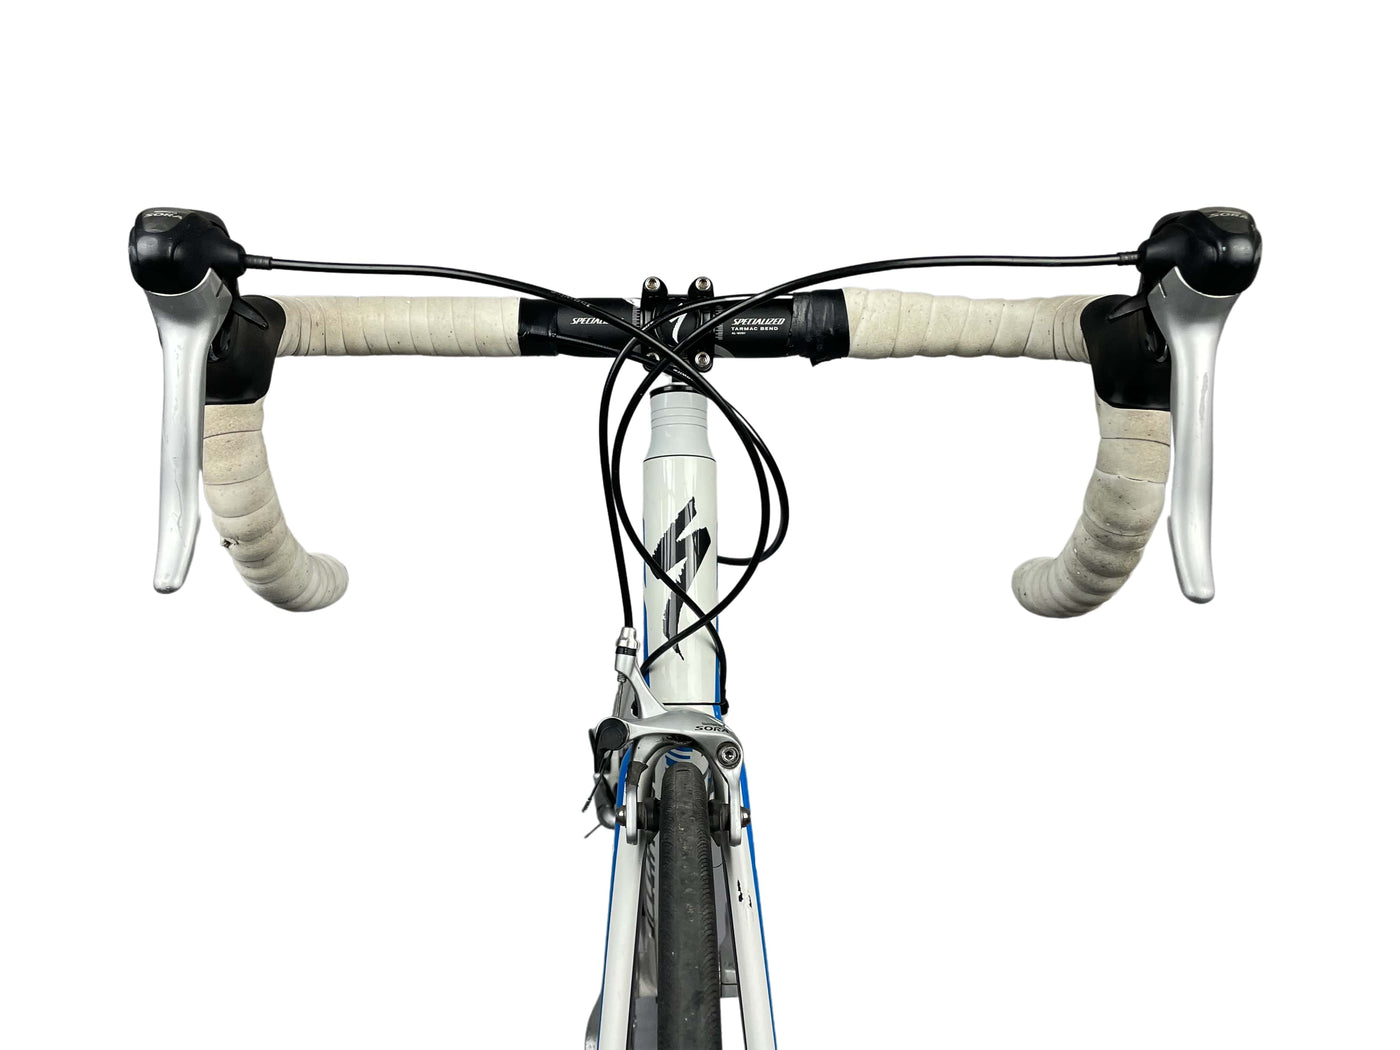 Specialized Allez sport 2012 - 54 - Bicycle